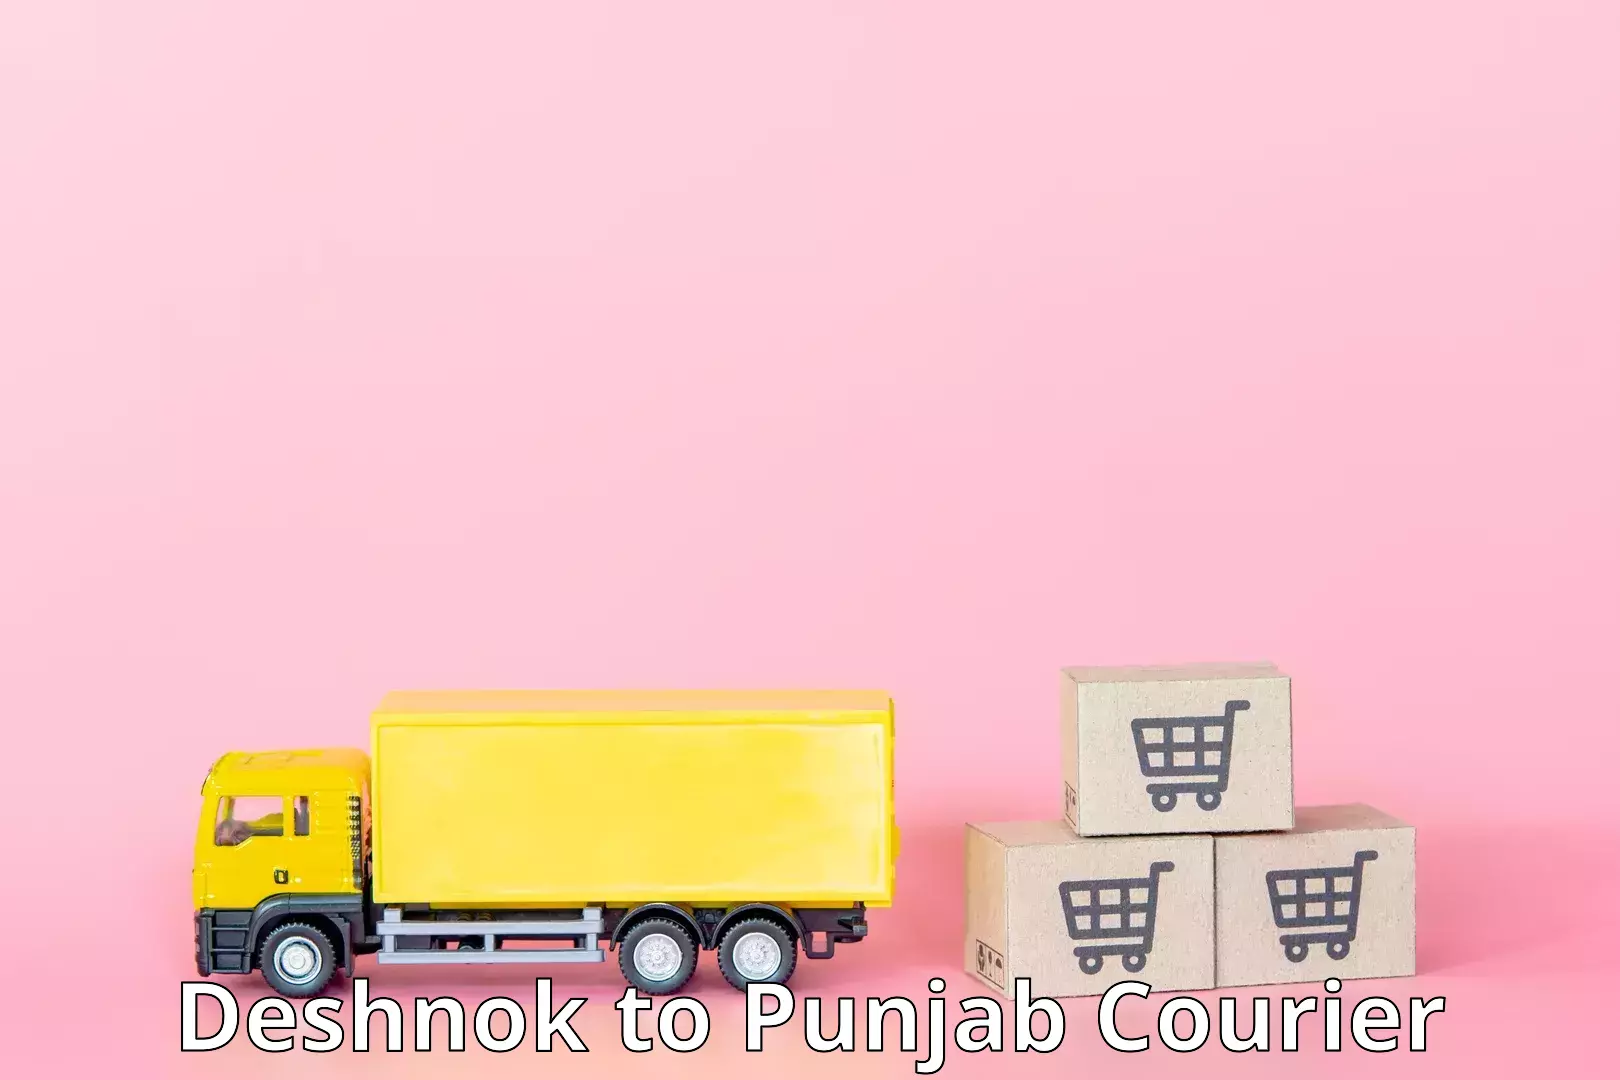 Express courier capabilities Deshnok to Hoshiarpur